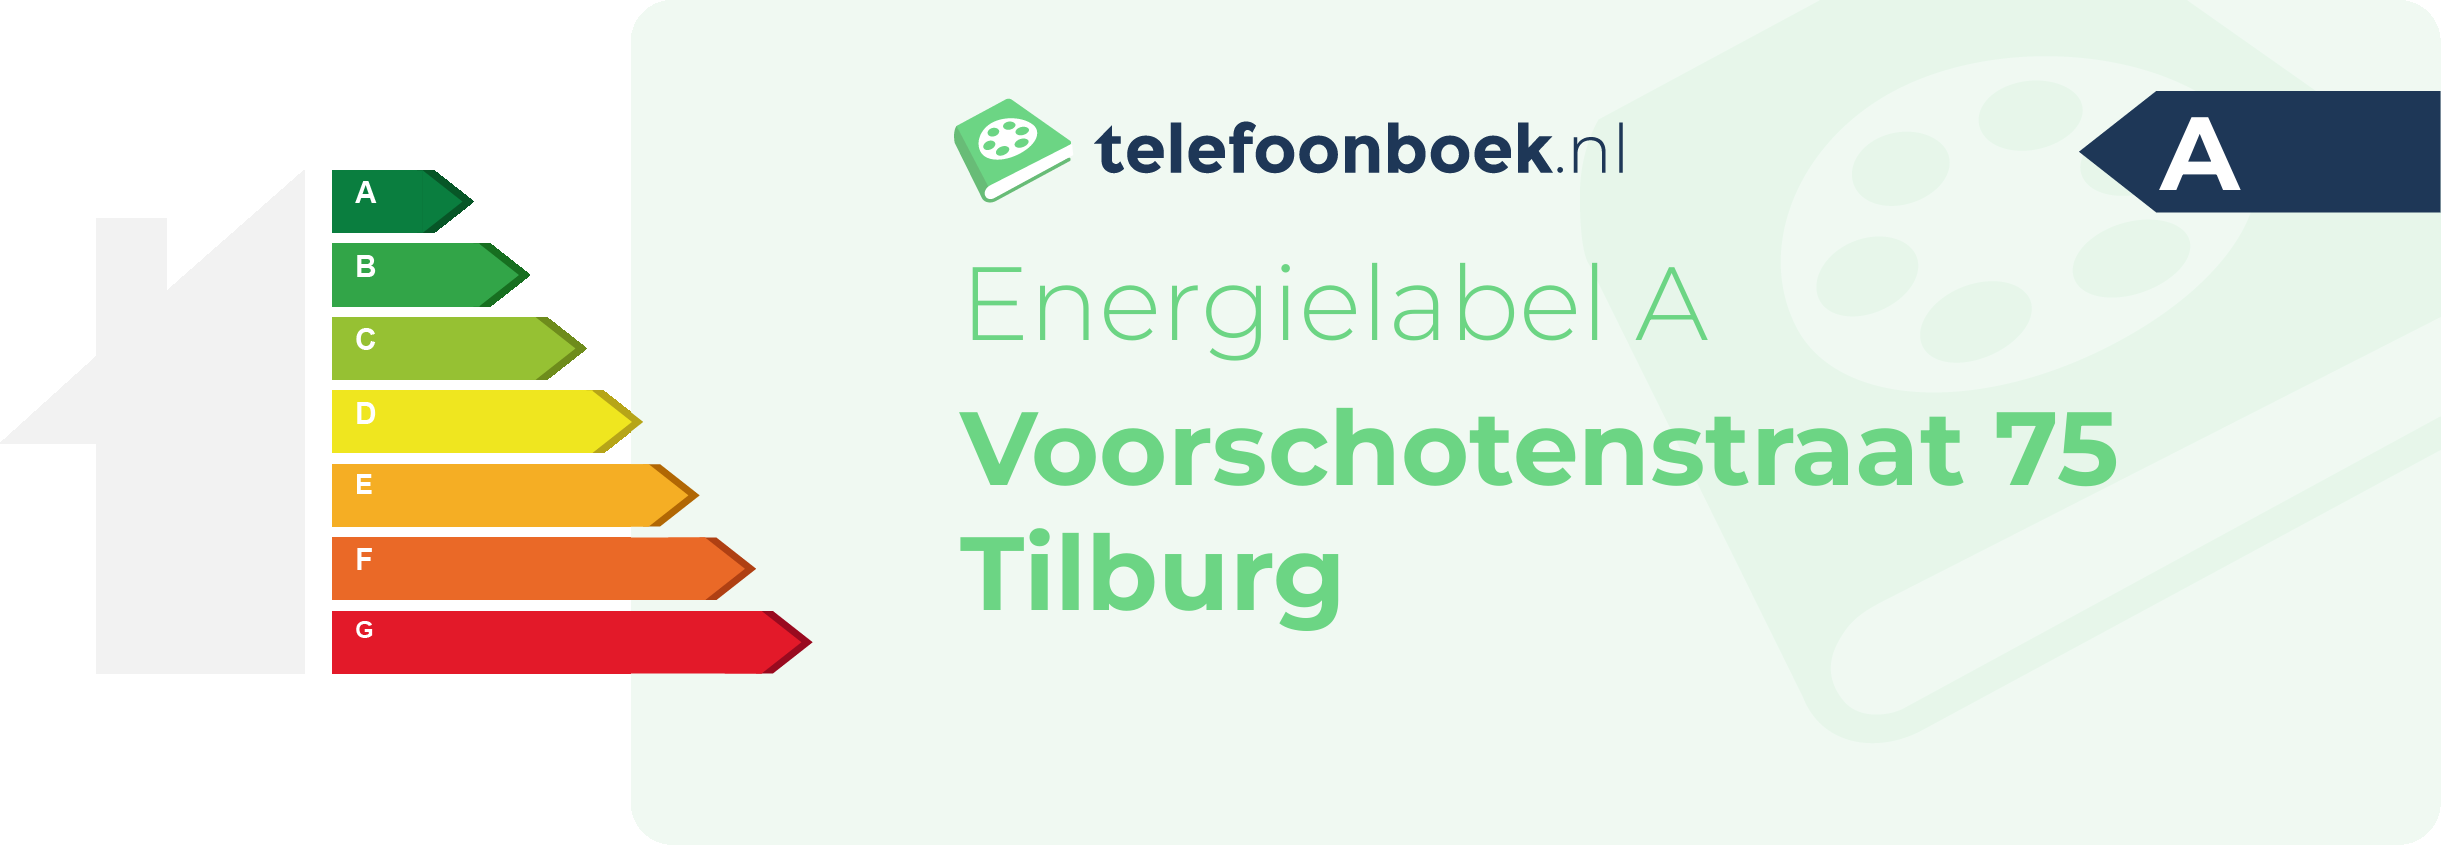 Energielabel Voorschotenstraat 75 Tilburg